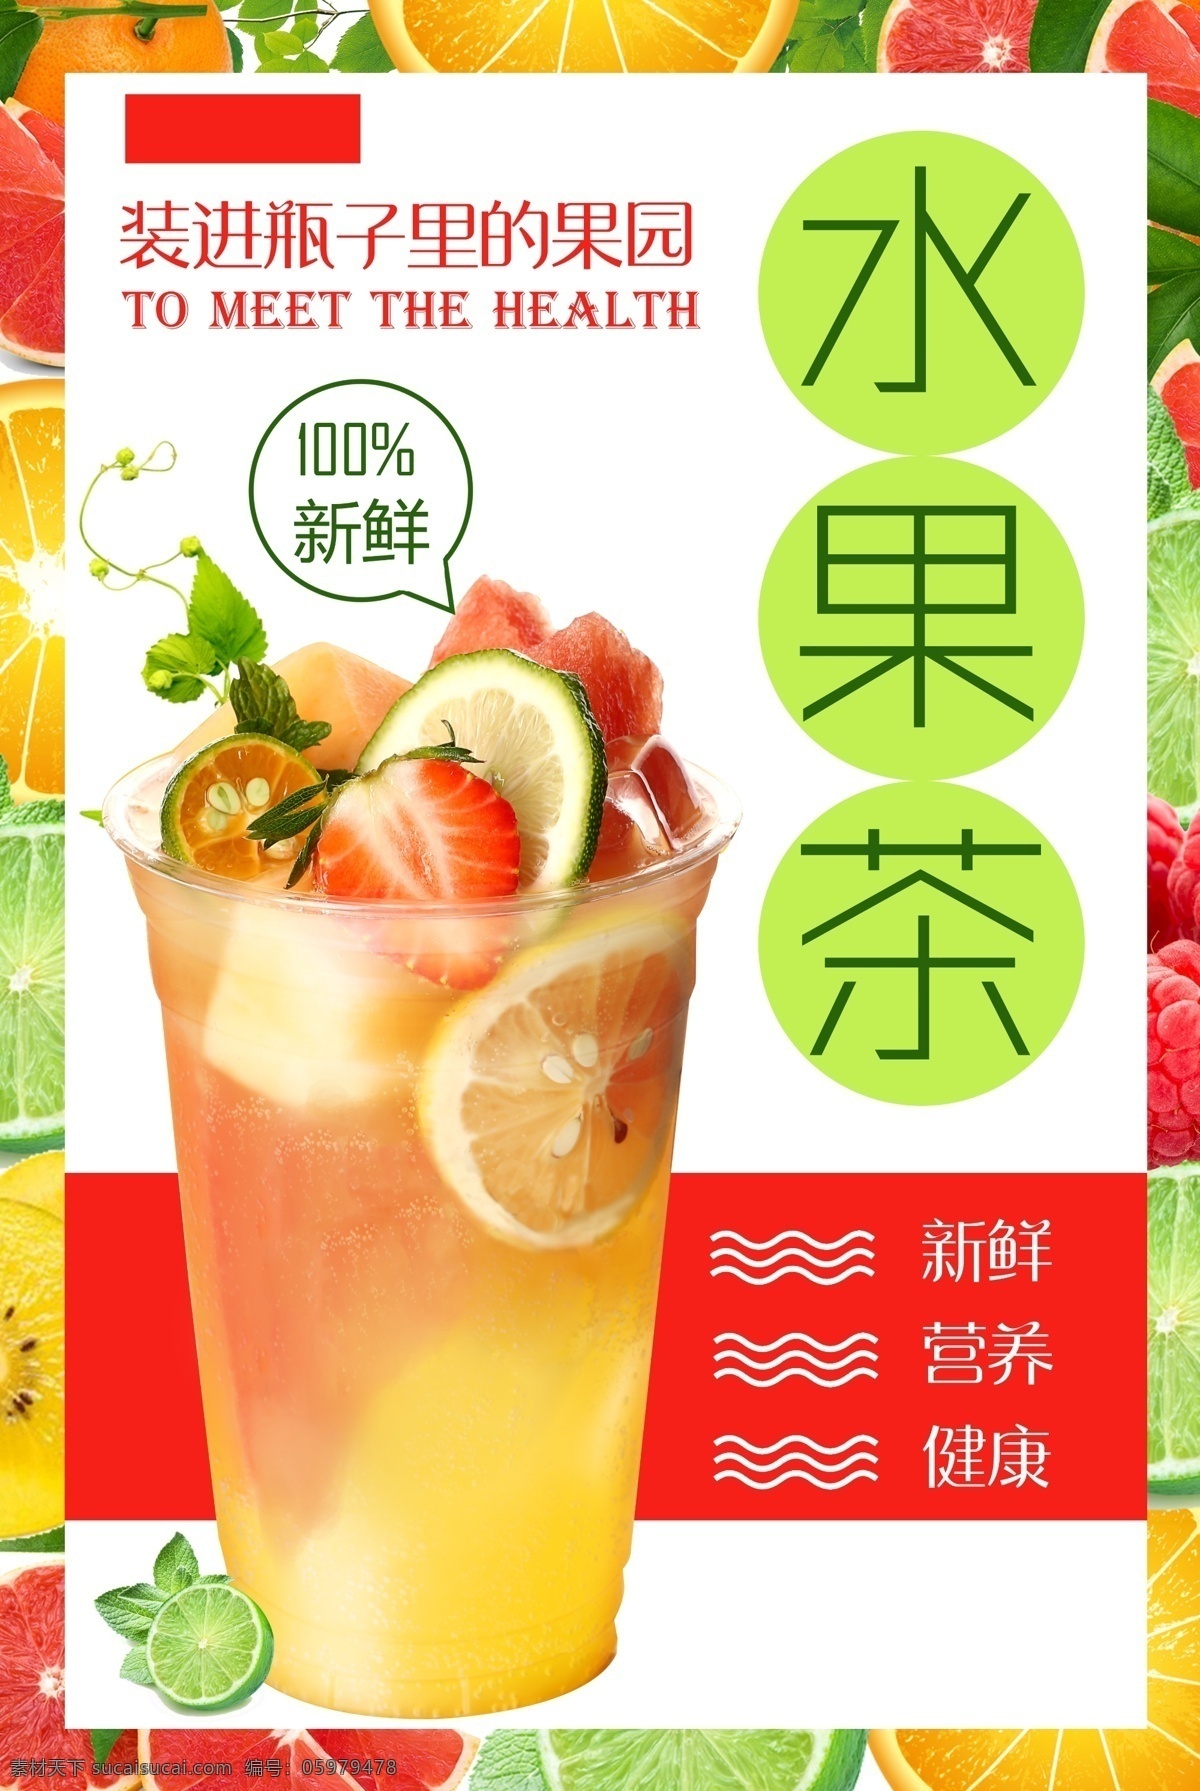 水果 茶饮 品饮 料 活动 宣传海报 素材图片 水果茶 饮品 饮料 宣传 海报 甜品 类